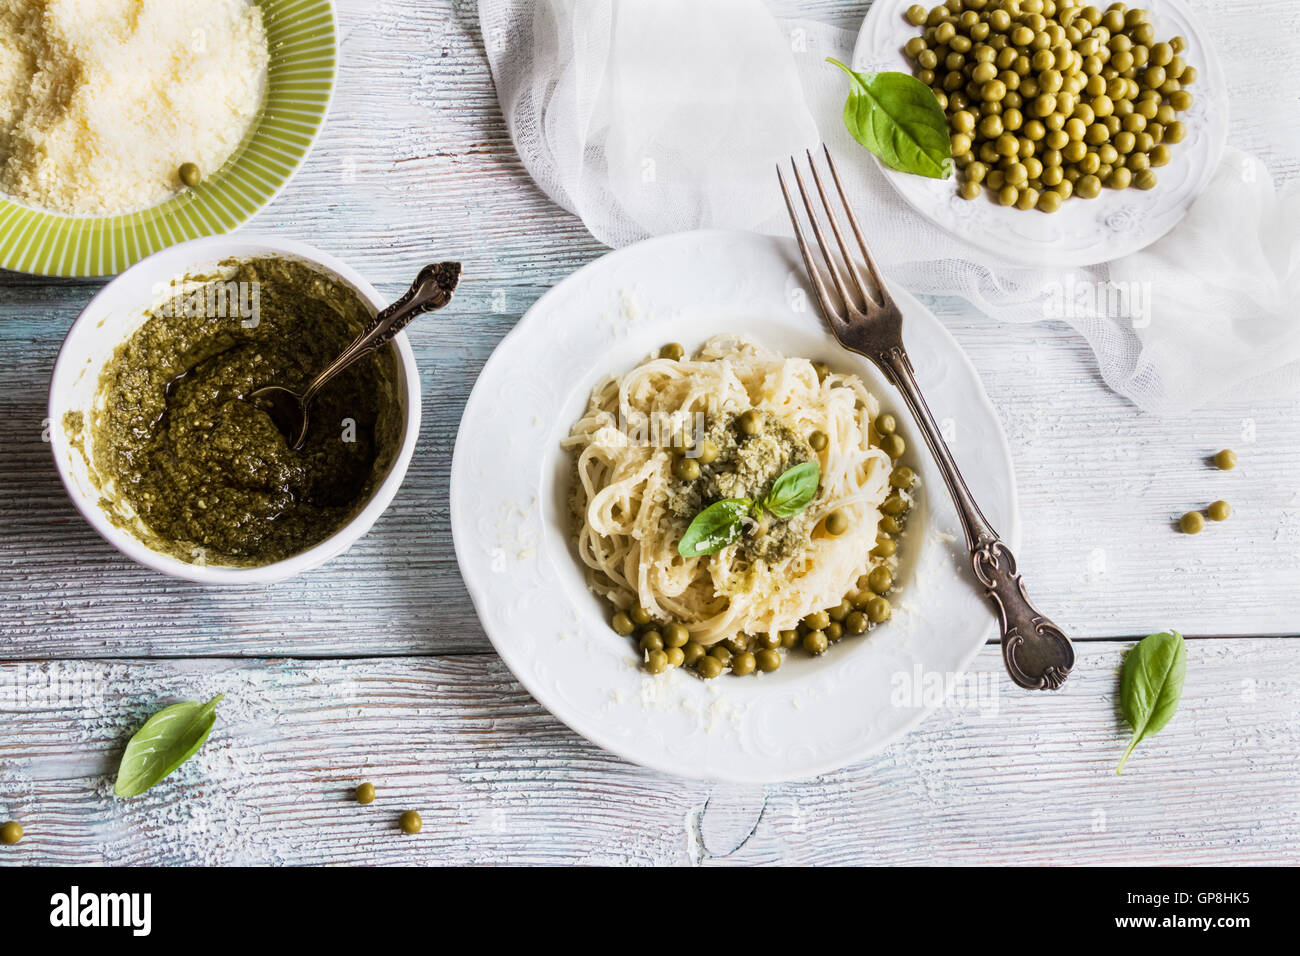 La pasta (espaguetis), judías verdes, salsa pesto, queso parmesano, albahaca fresca. Placas de Vintage, mesa de madera, vista superior. Foto de stock